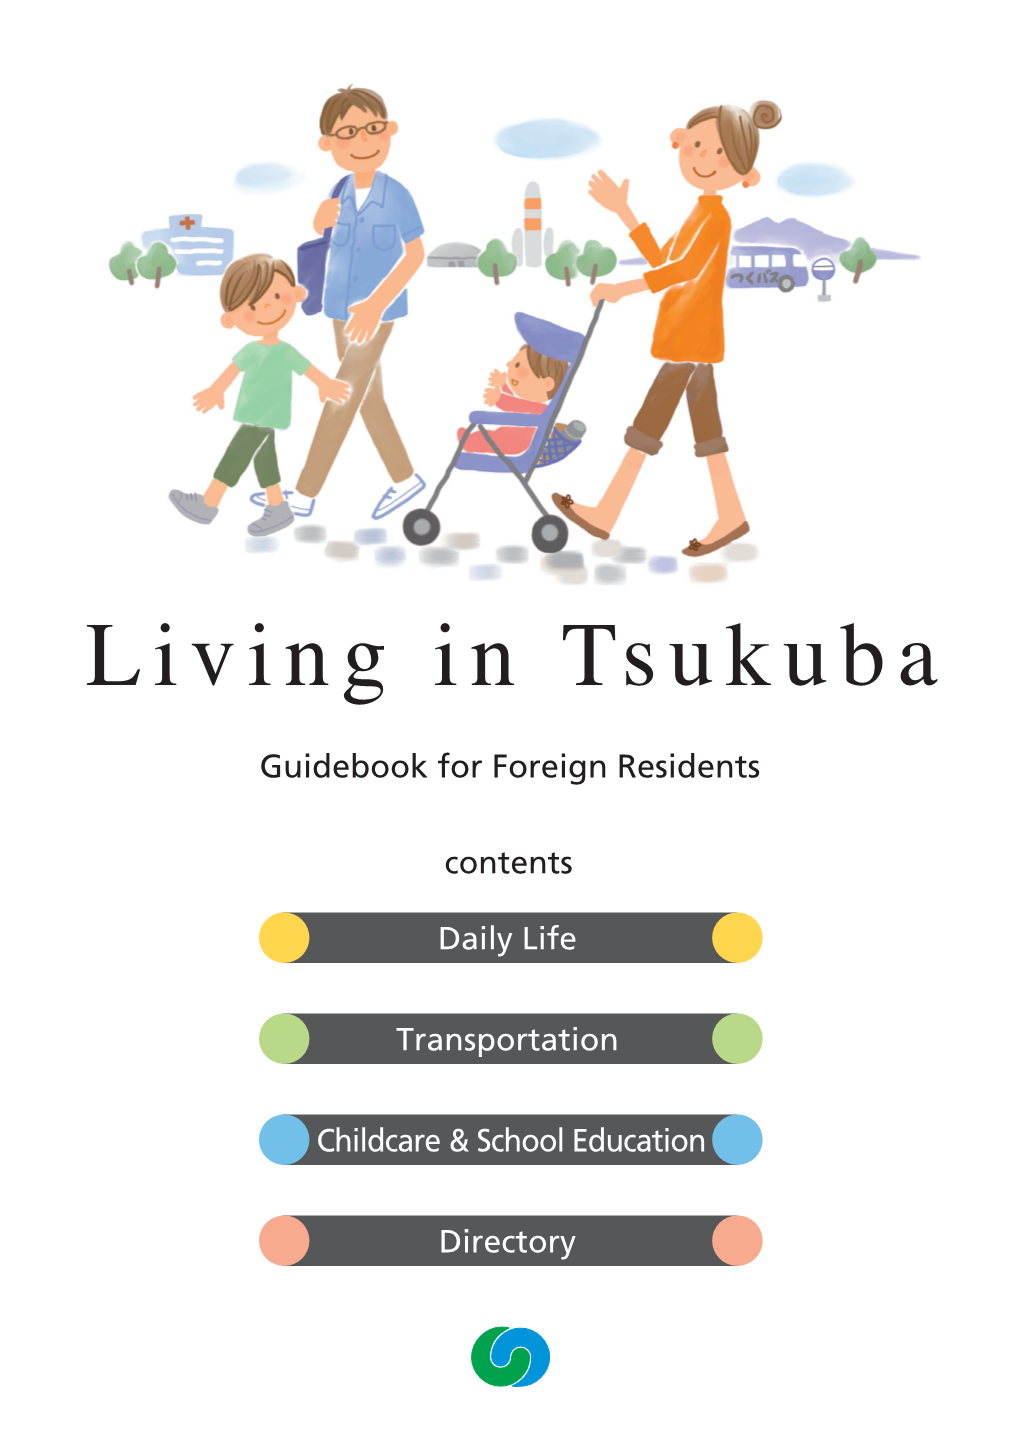 Living in Tsukuba Living Guidebook Infor Foreign T Residentssukuba Guidebook for Foreign Residents